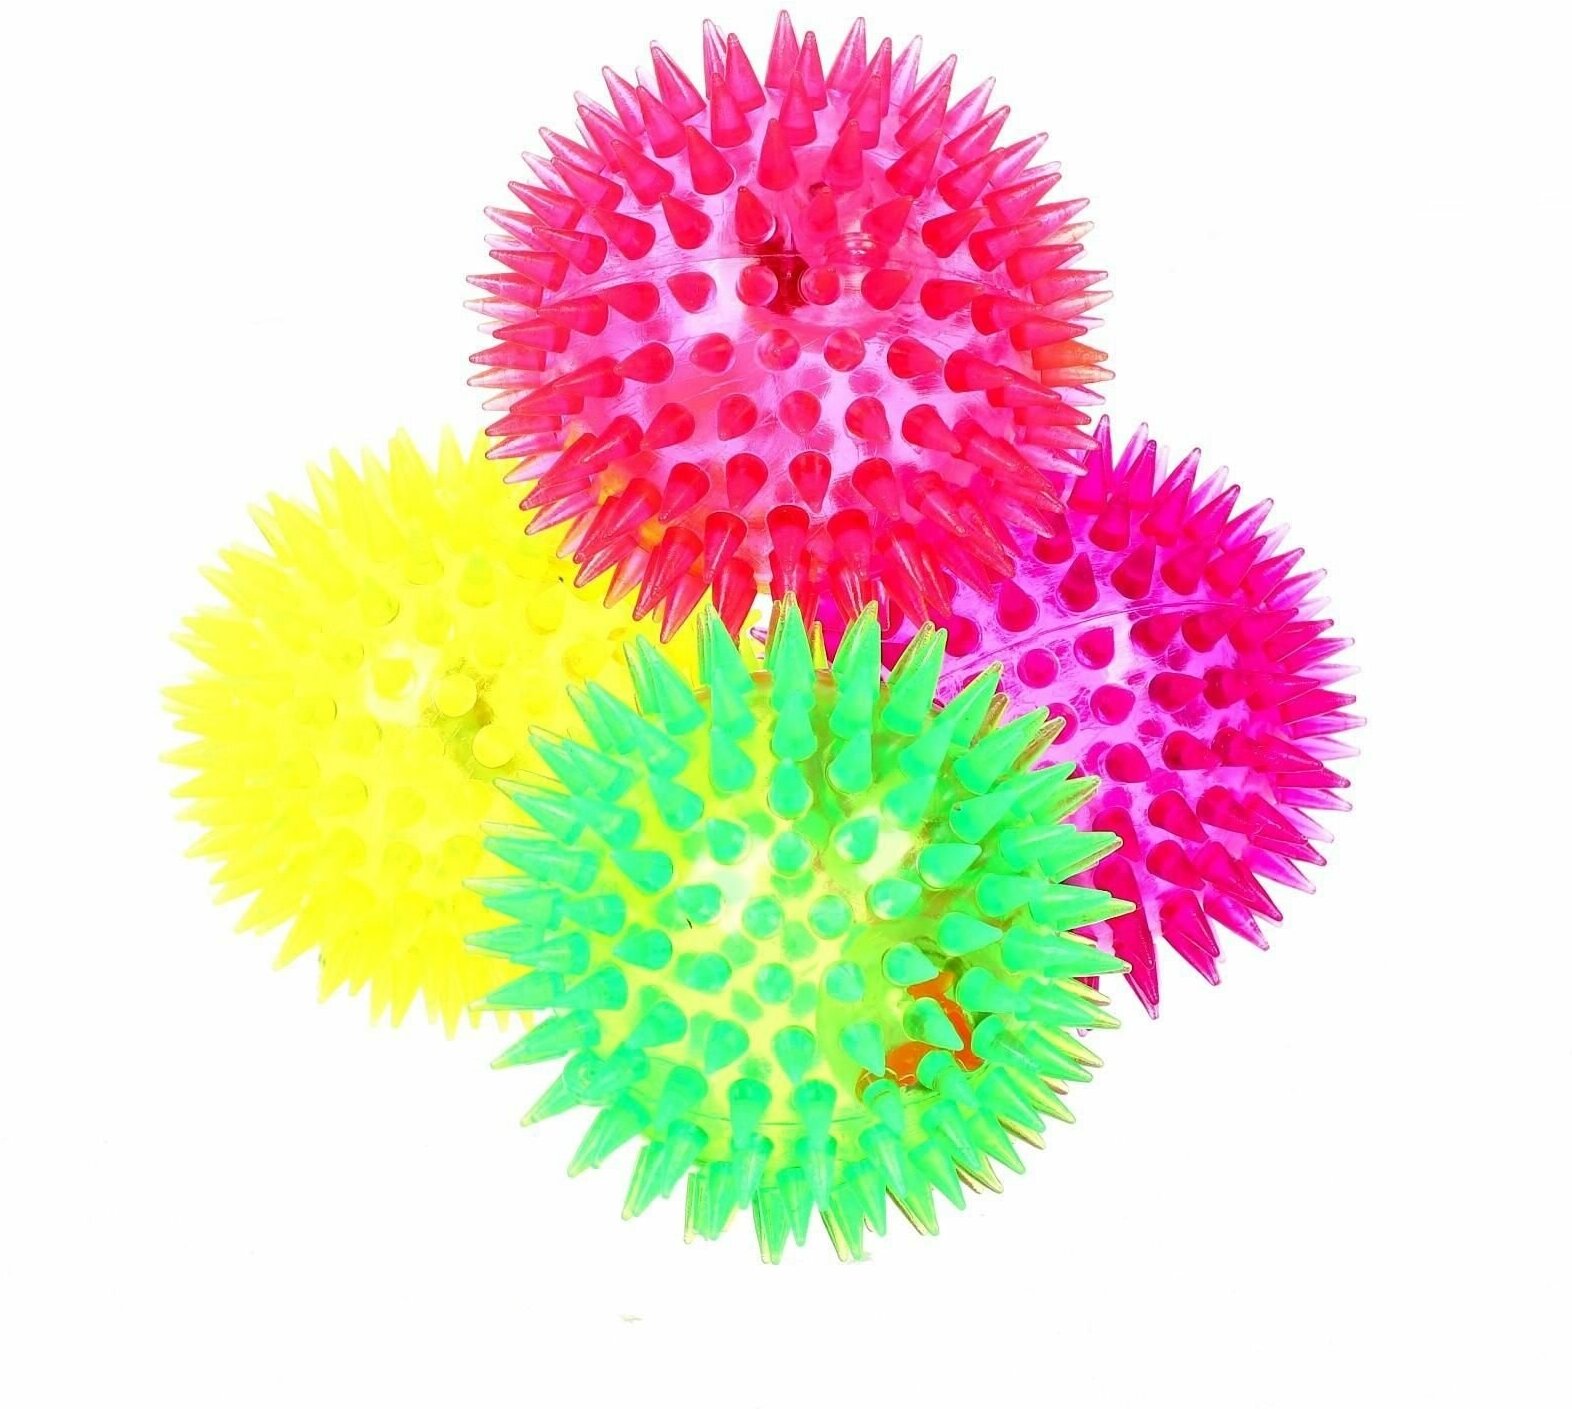 Мяч световой Ёжик , цвета микс